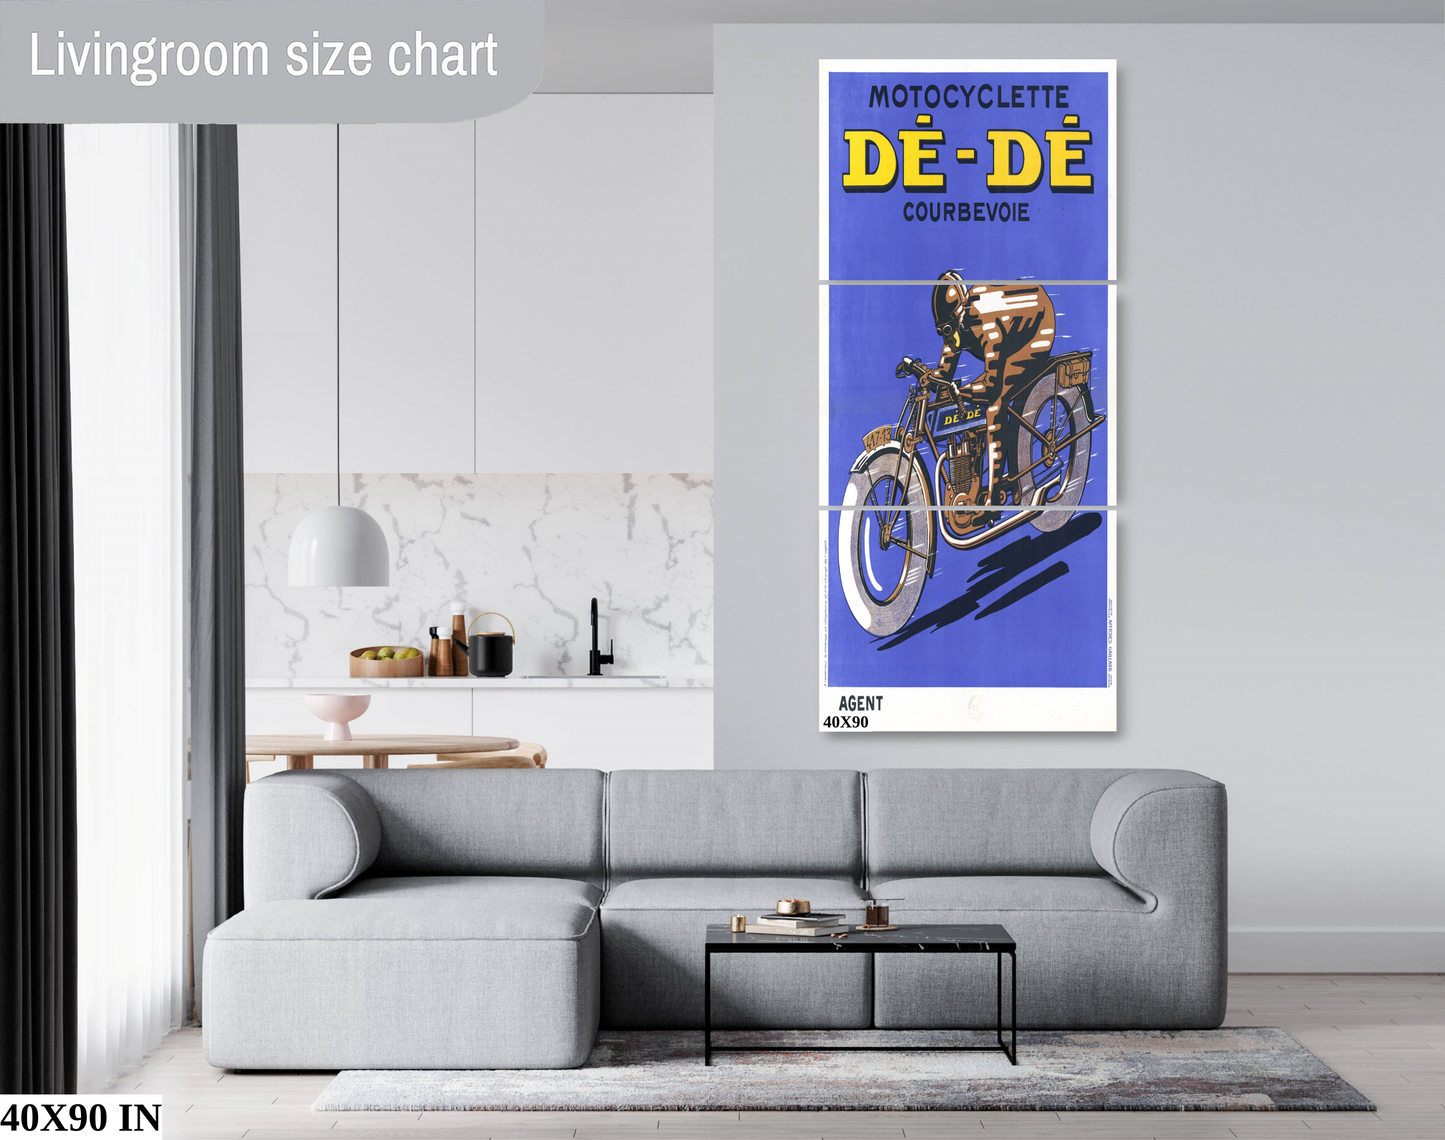 De-De Motorcycle Poster